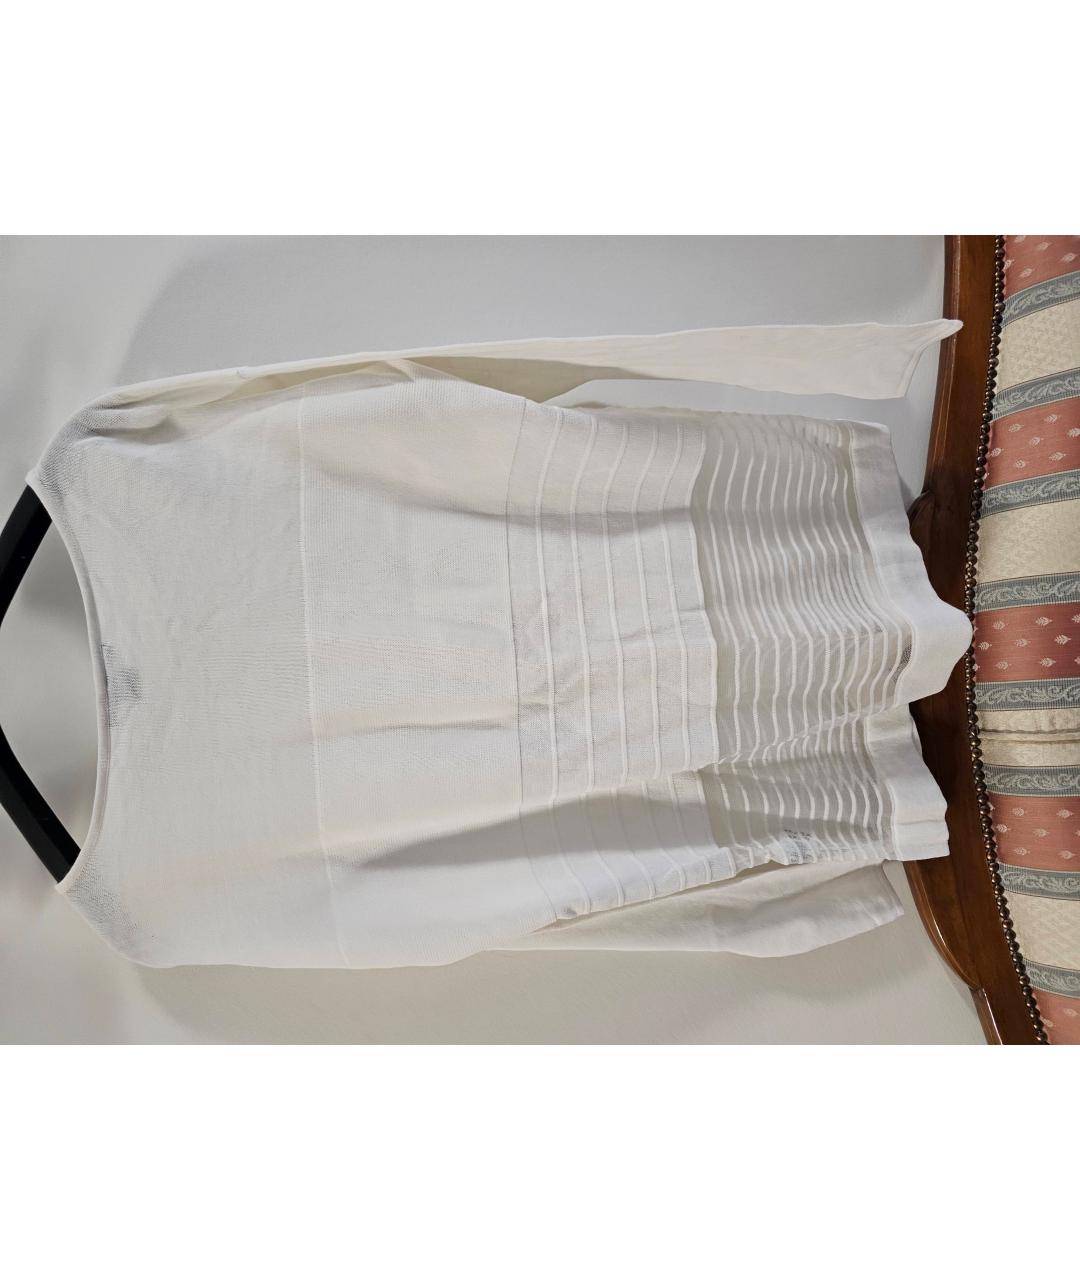 ARMANI EXCHANGE Белый хлопковый джемпер / свитер, фото 2